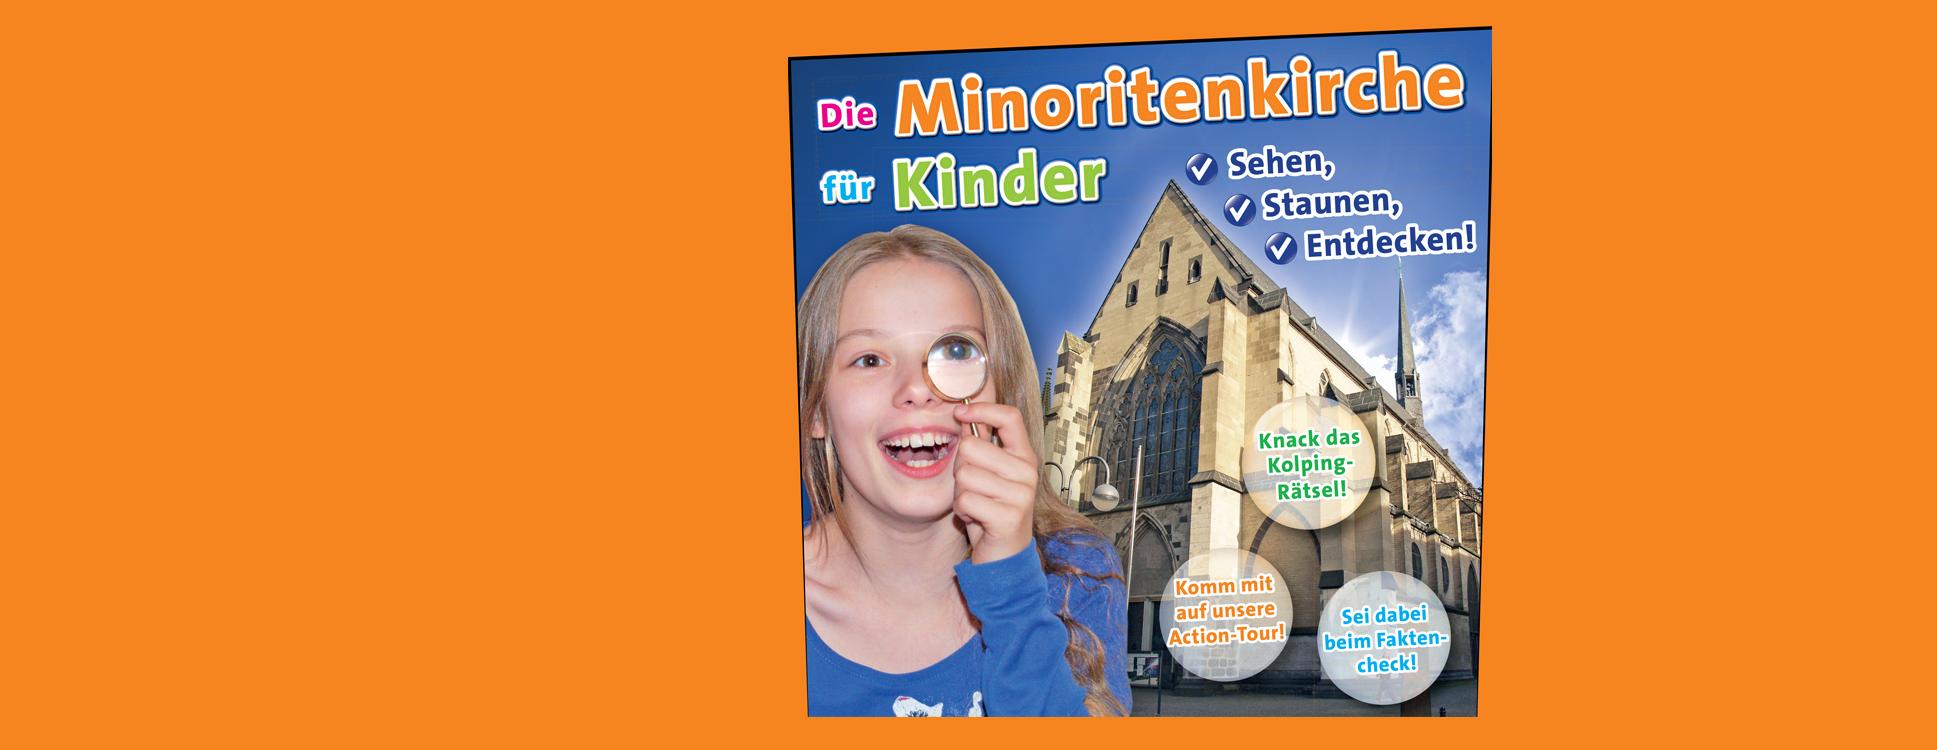 Minoritenkirche für Kinder